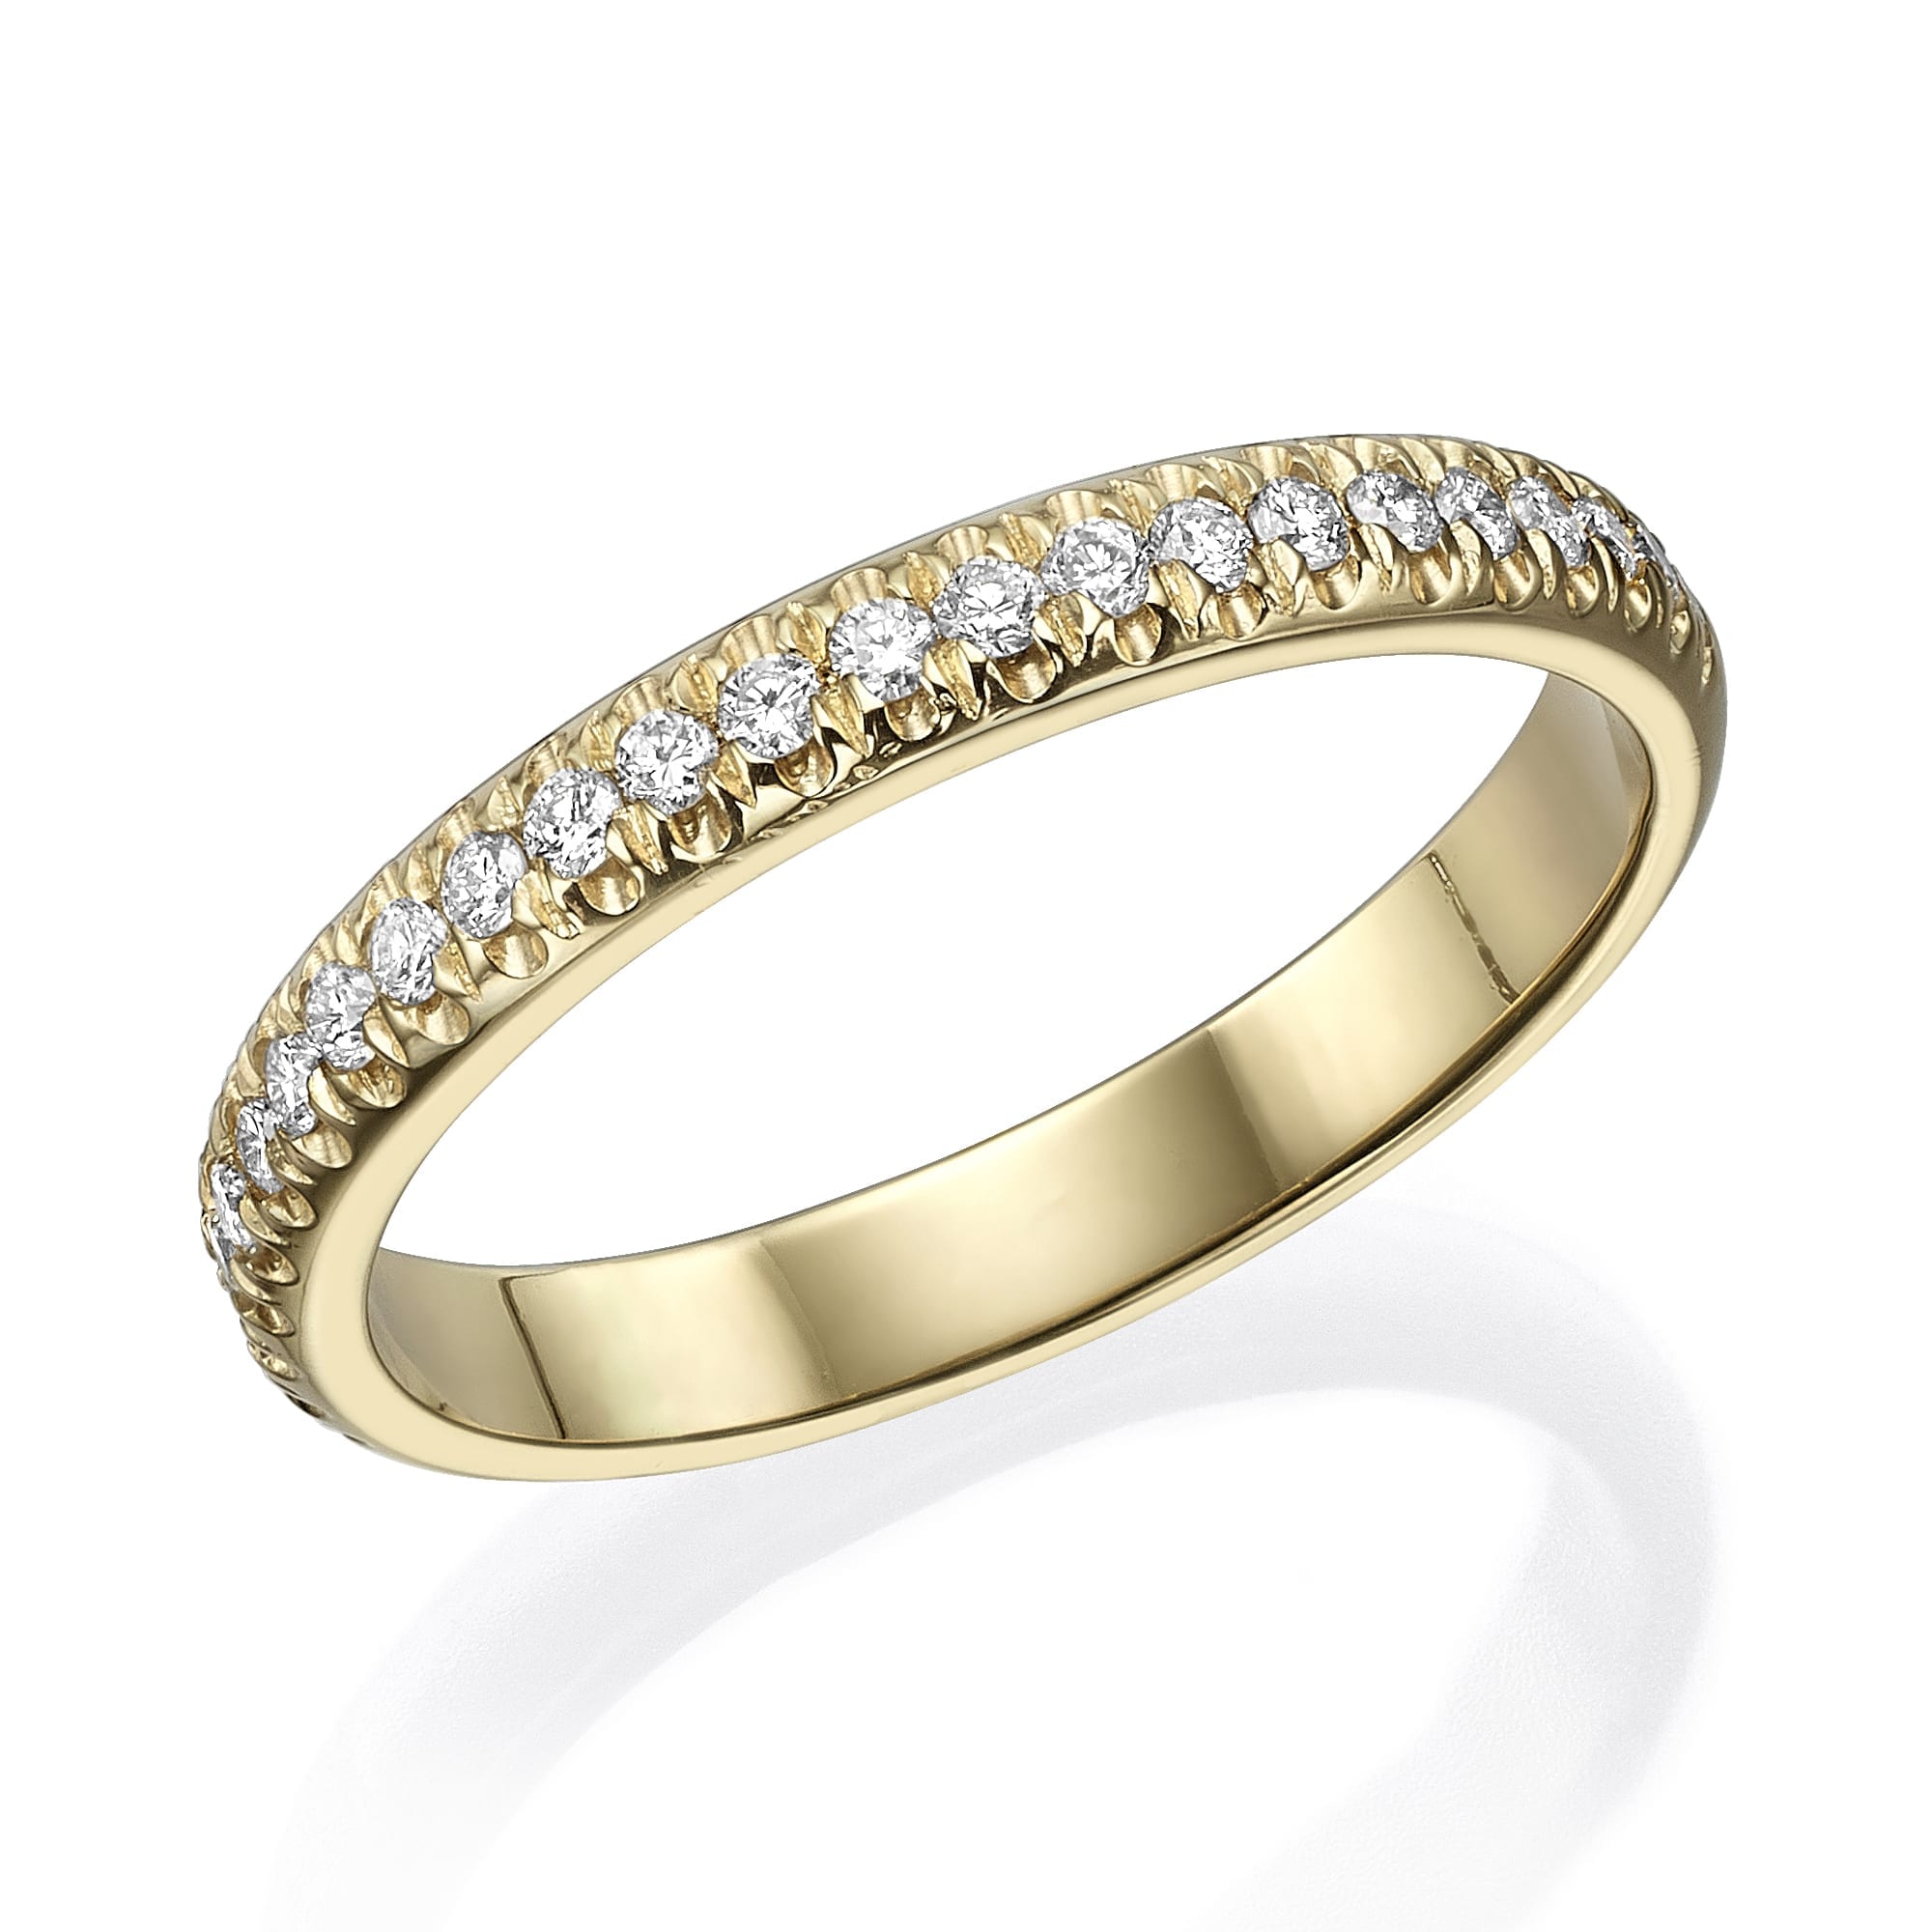 אלגנטיות נצחית: טבעת יהלומים דגם אדיסון מעוטרת בשורה אחת של יהלומים נוצצים בחיתוך עגול.